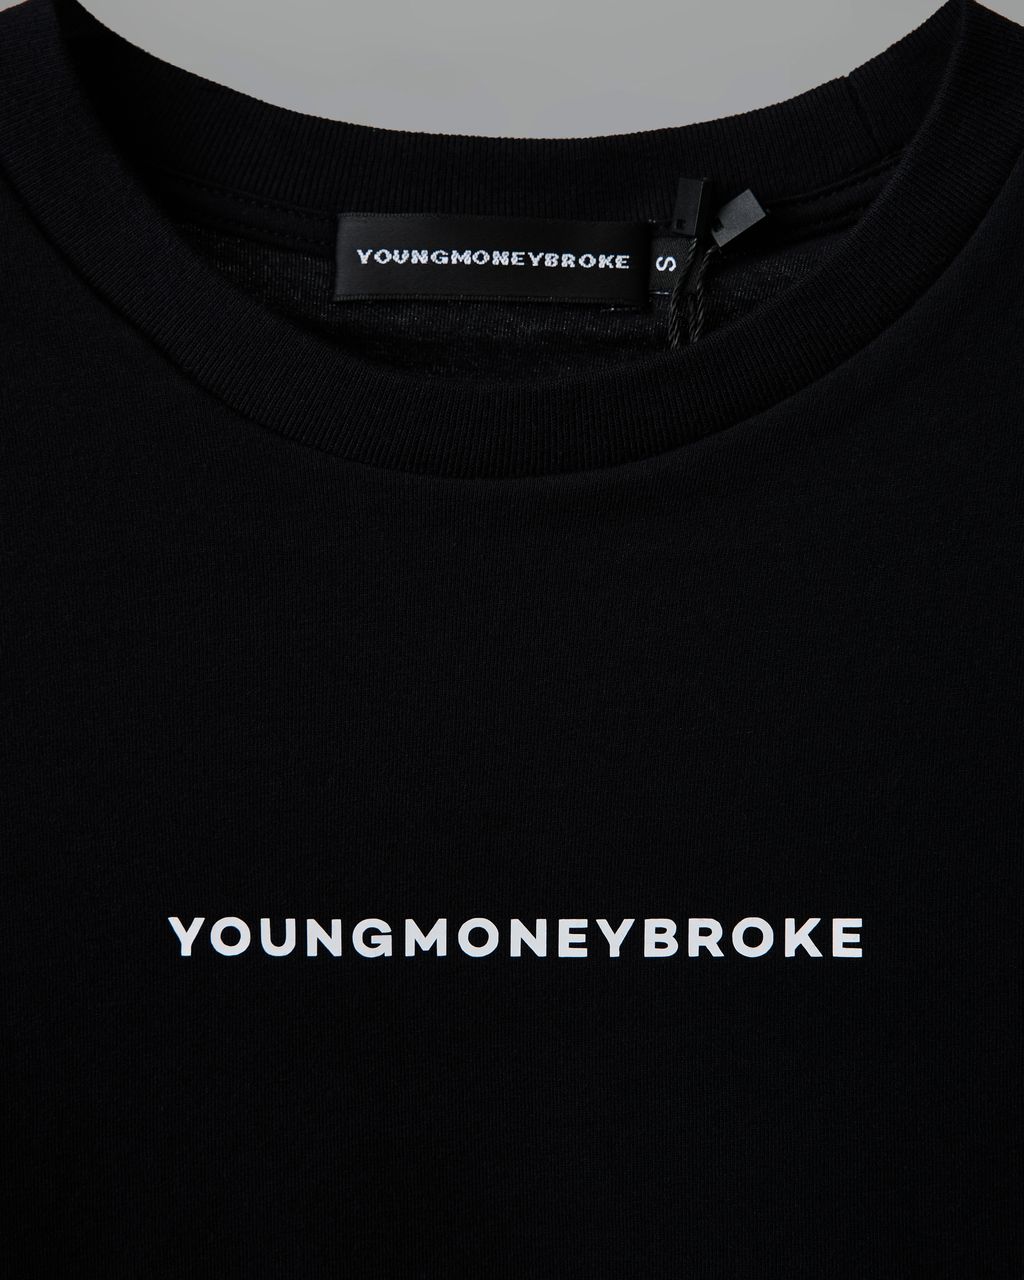 YMB_t-shirt_closeup.jpg